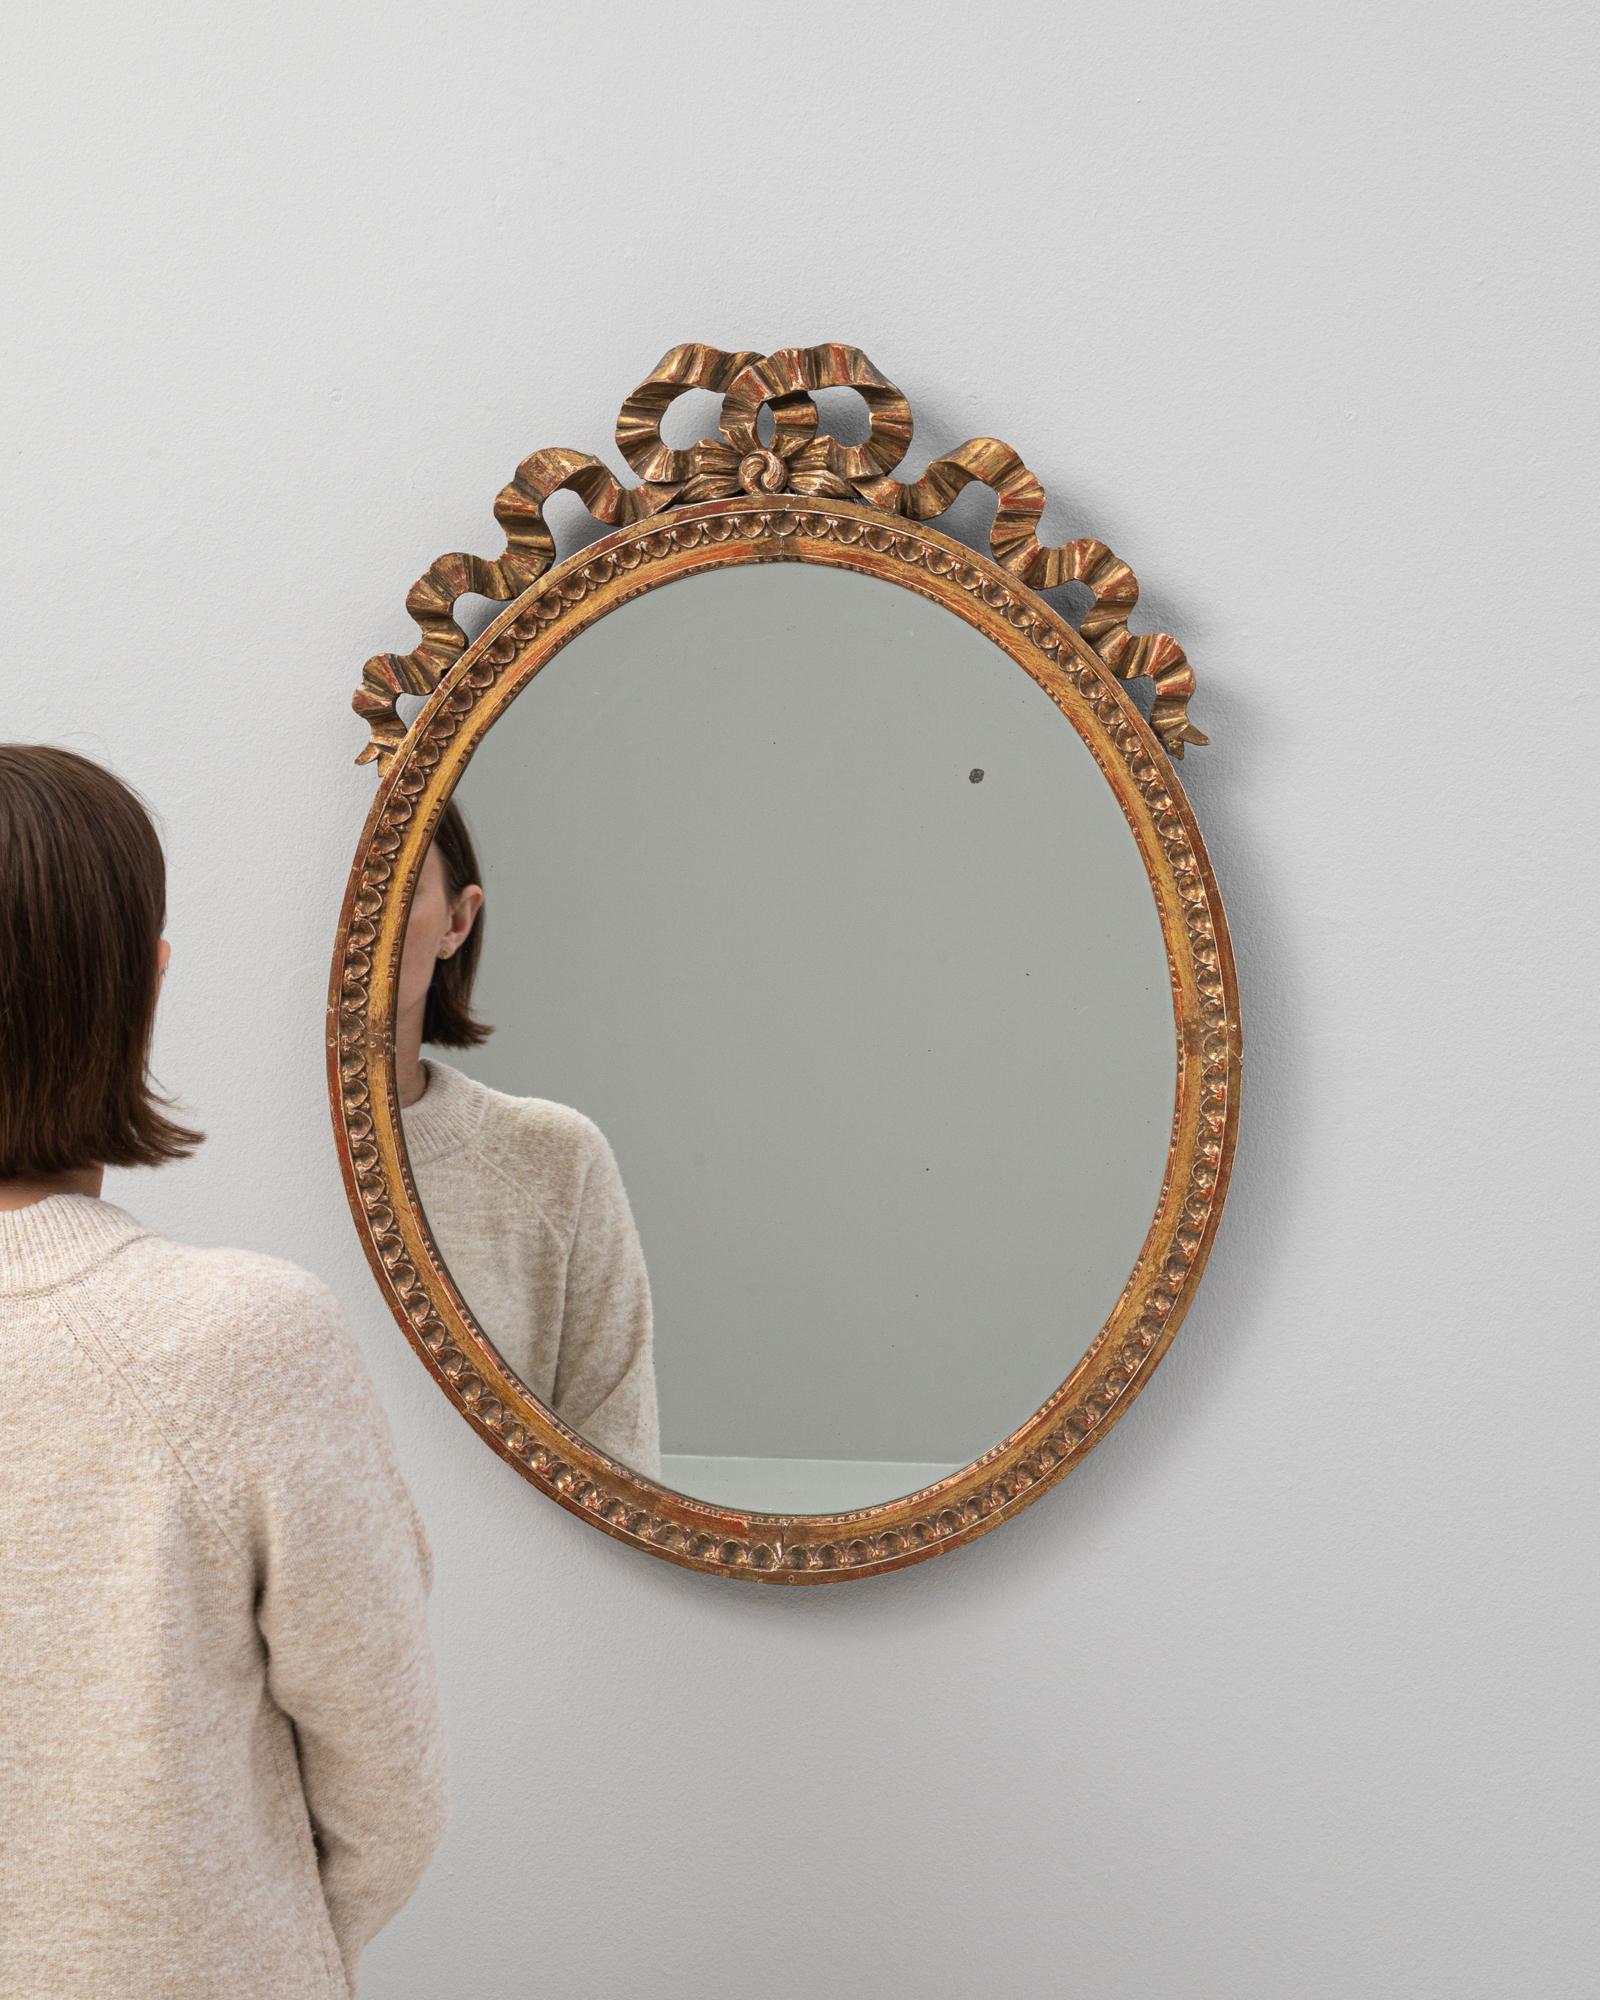 Entrez dans un monde de charme classique avec ce miroir en bois français des années 1900, une pièce qui incarne parfaitement la grandeur de son époque. Le miroir rond est encadré par une bordure en bois magnifiquement travaillée, enrichie d'une